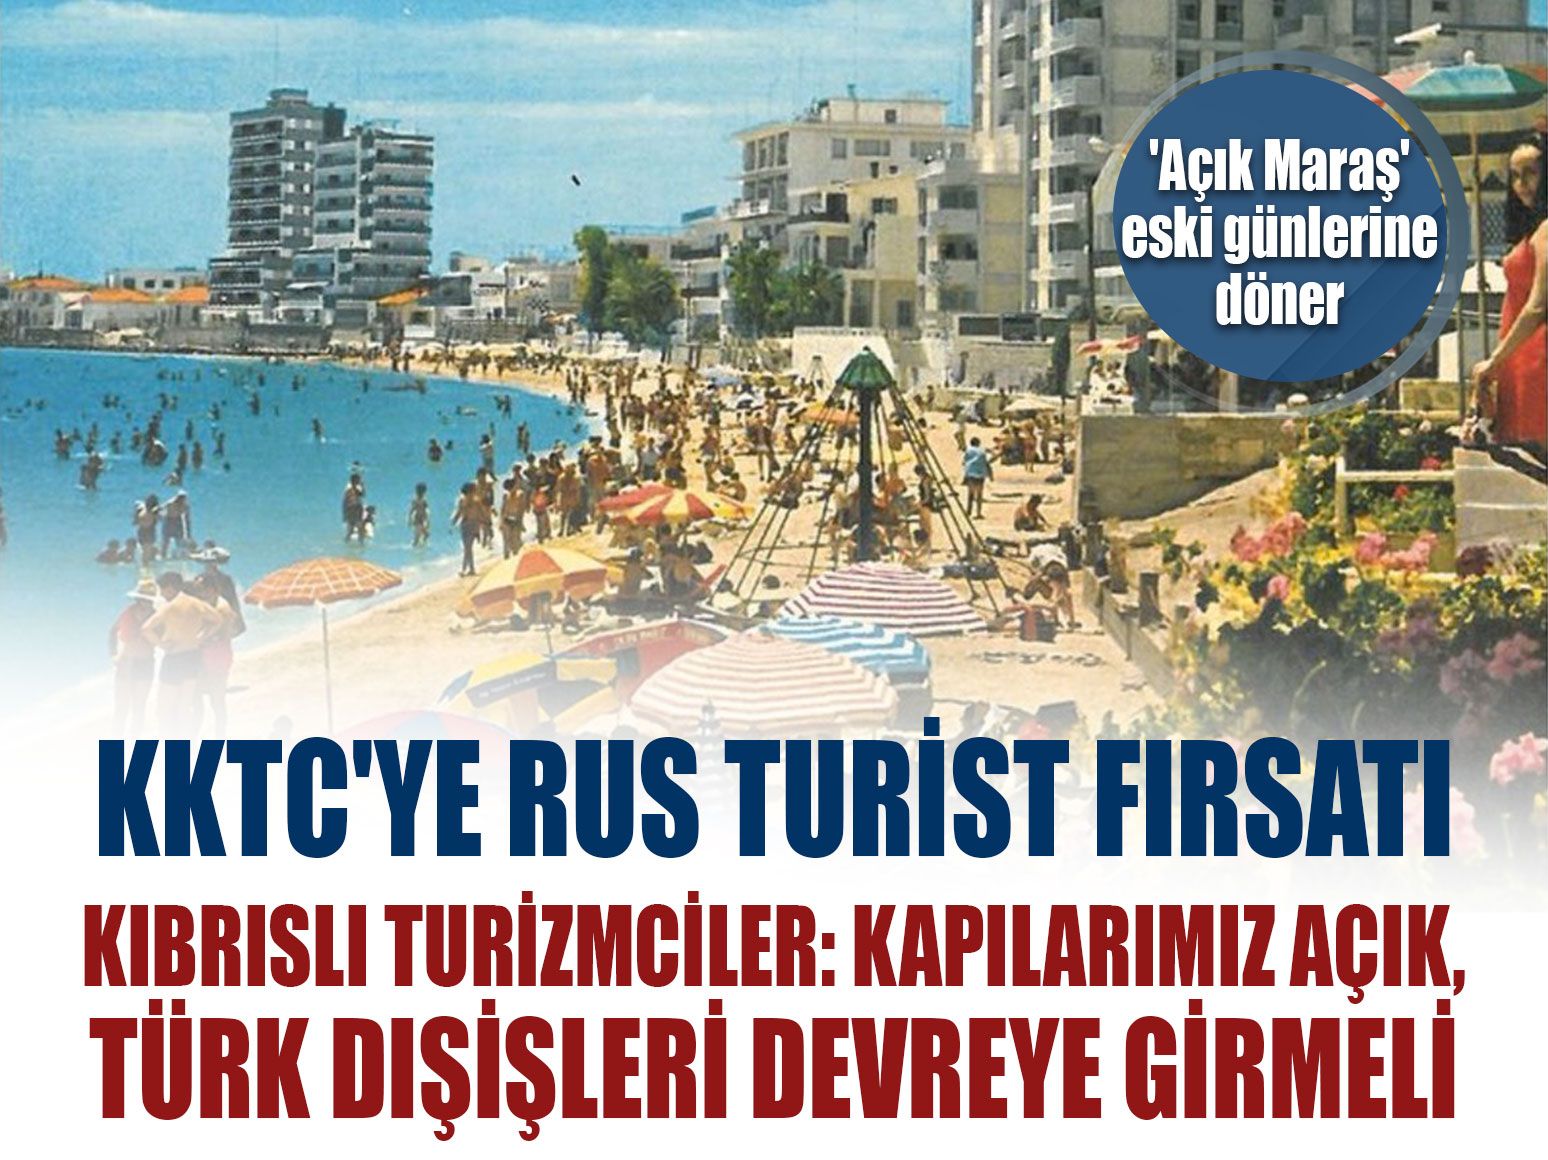 KKTC'ye Rus turist fırsatı, Kıbrıslı Turizmciler: Kapılarımız açık, Türk Dışişleri devreye girmeli